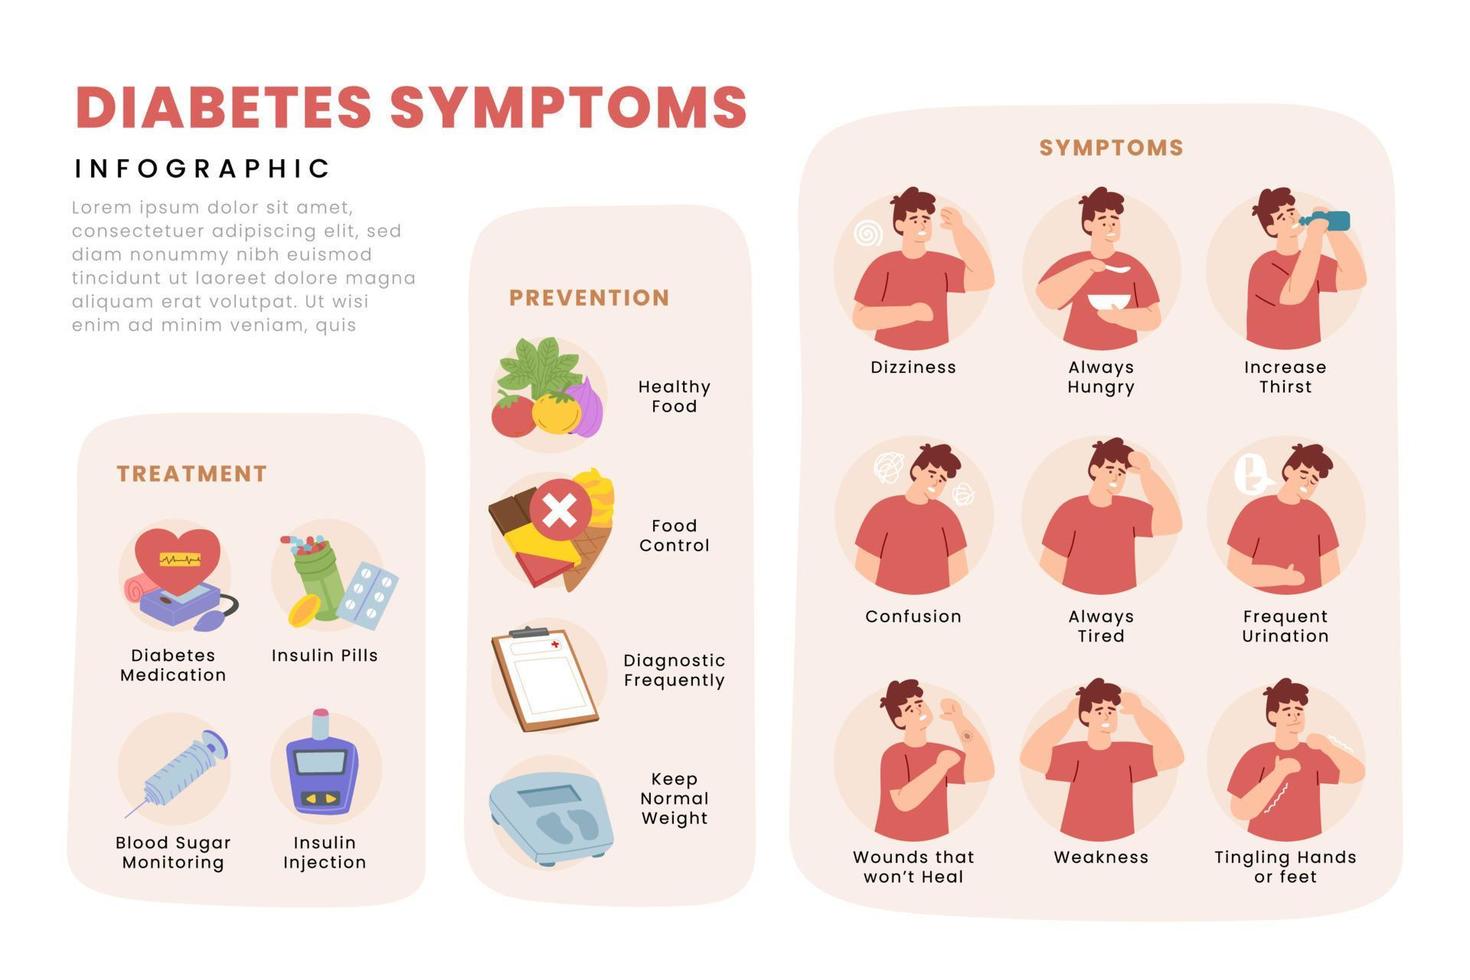 traitement des symptômes de prévention du diabète et soins aux patients informations médicales illustrées pour un mode de vie sain illustration vectorielle d'affiche infographique plate vecteur